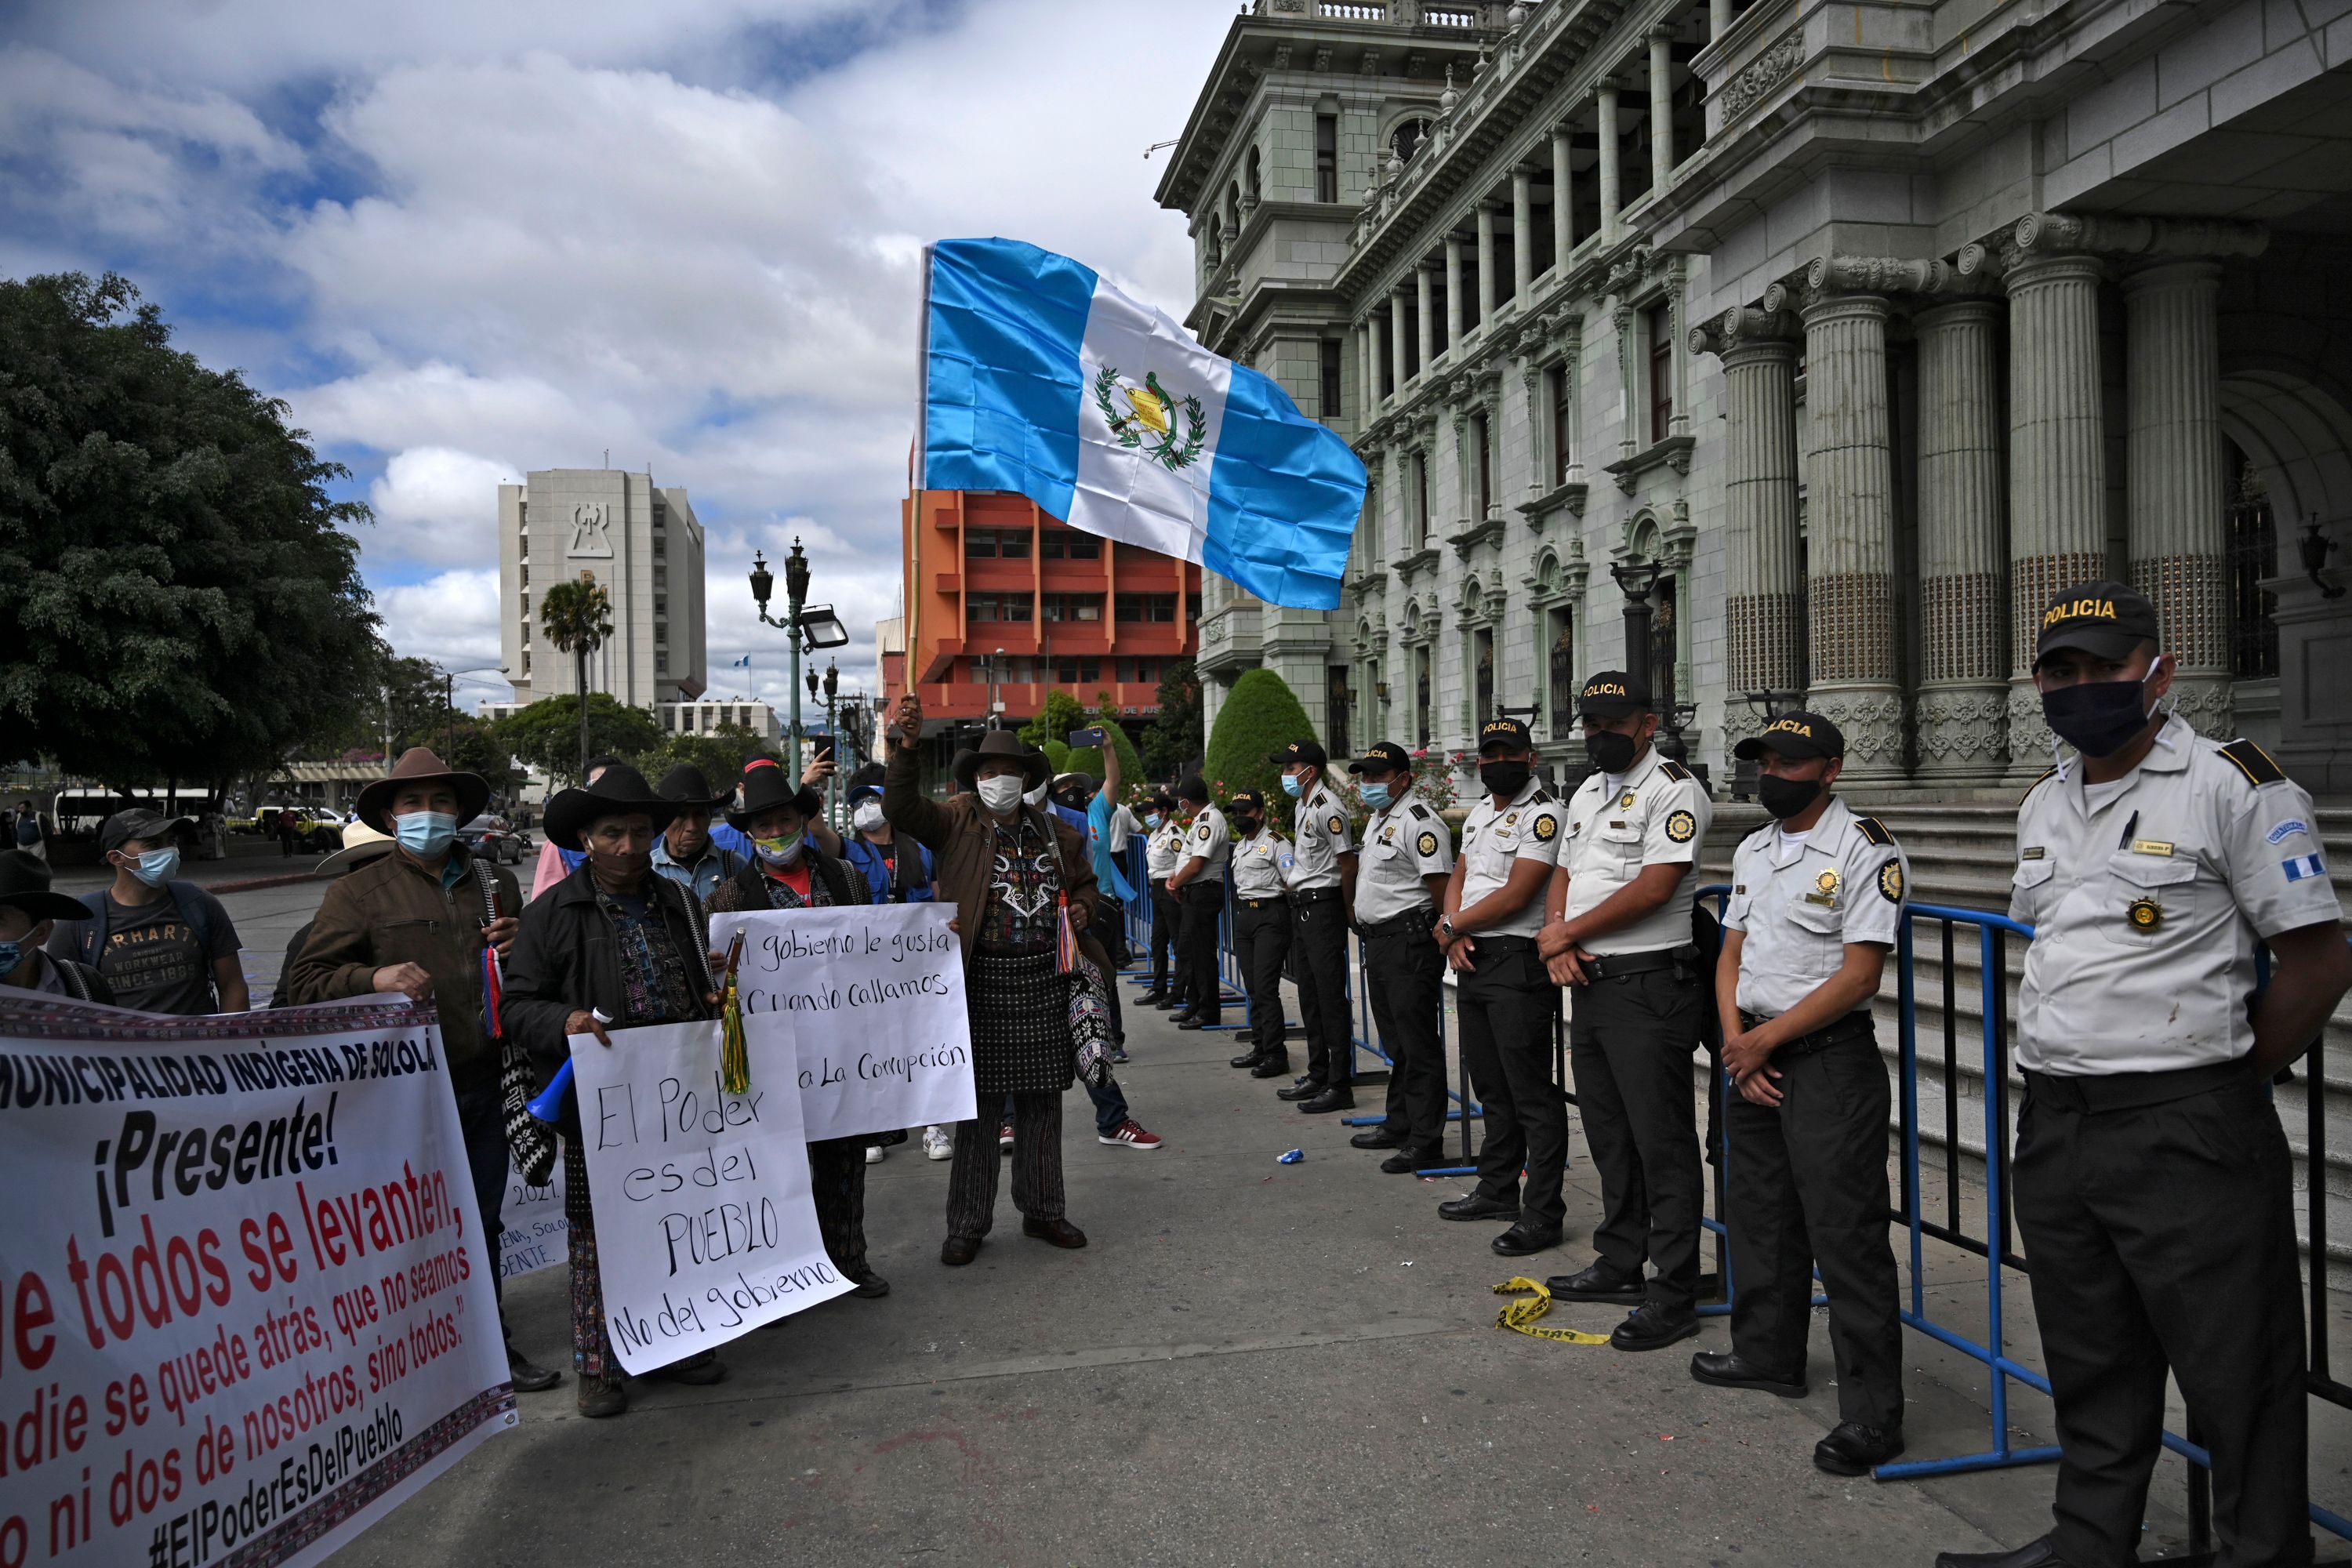 Líderes indígenas de Totonicapán y Sololá participan en el cuarto día de protestas consecutivas en contra del presidente Giammattei y los diputados oficialistas. (Foto Prensa Libre: AFP)